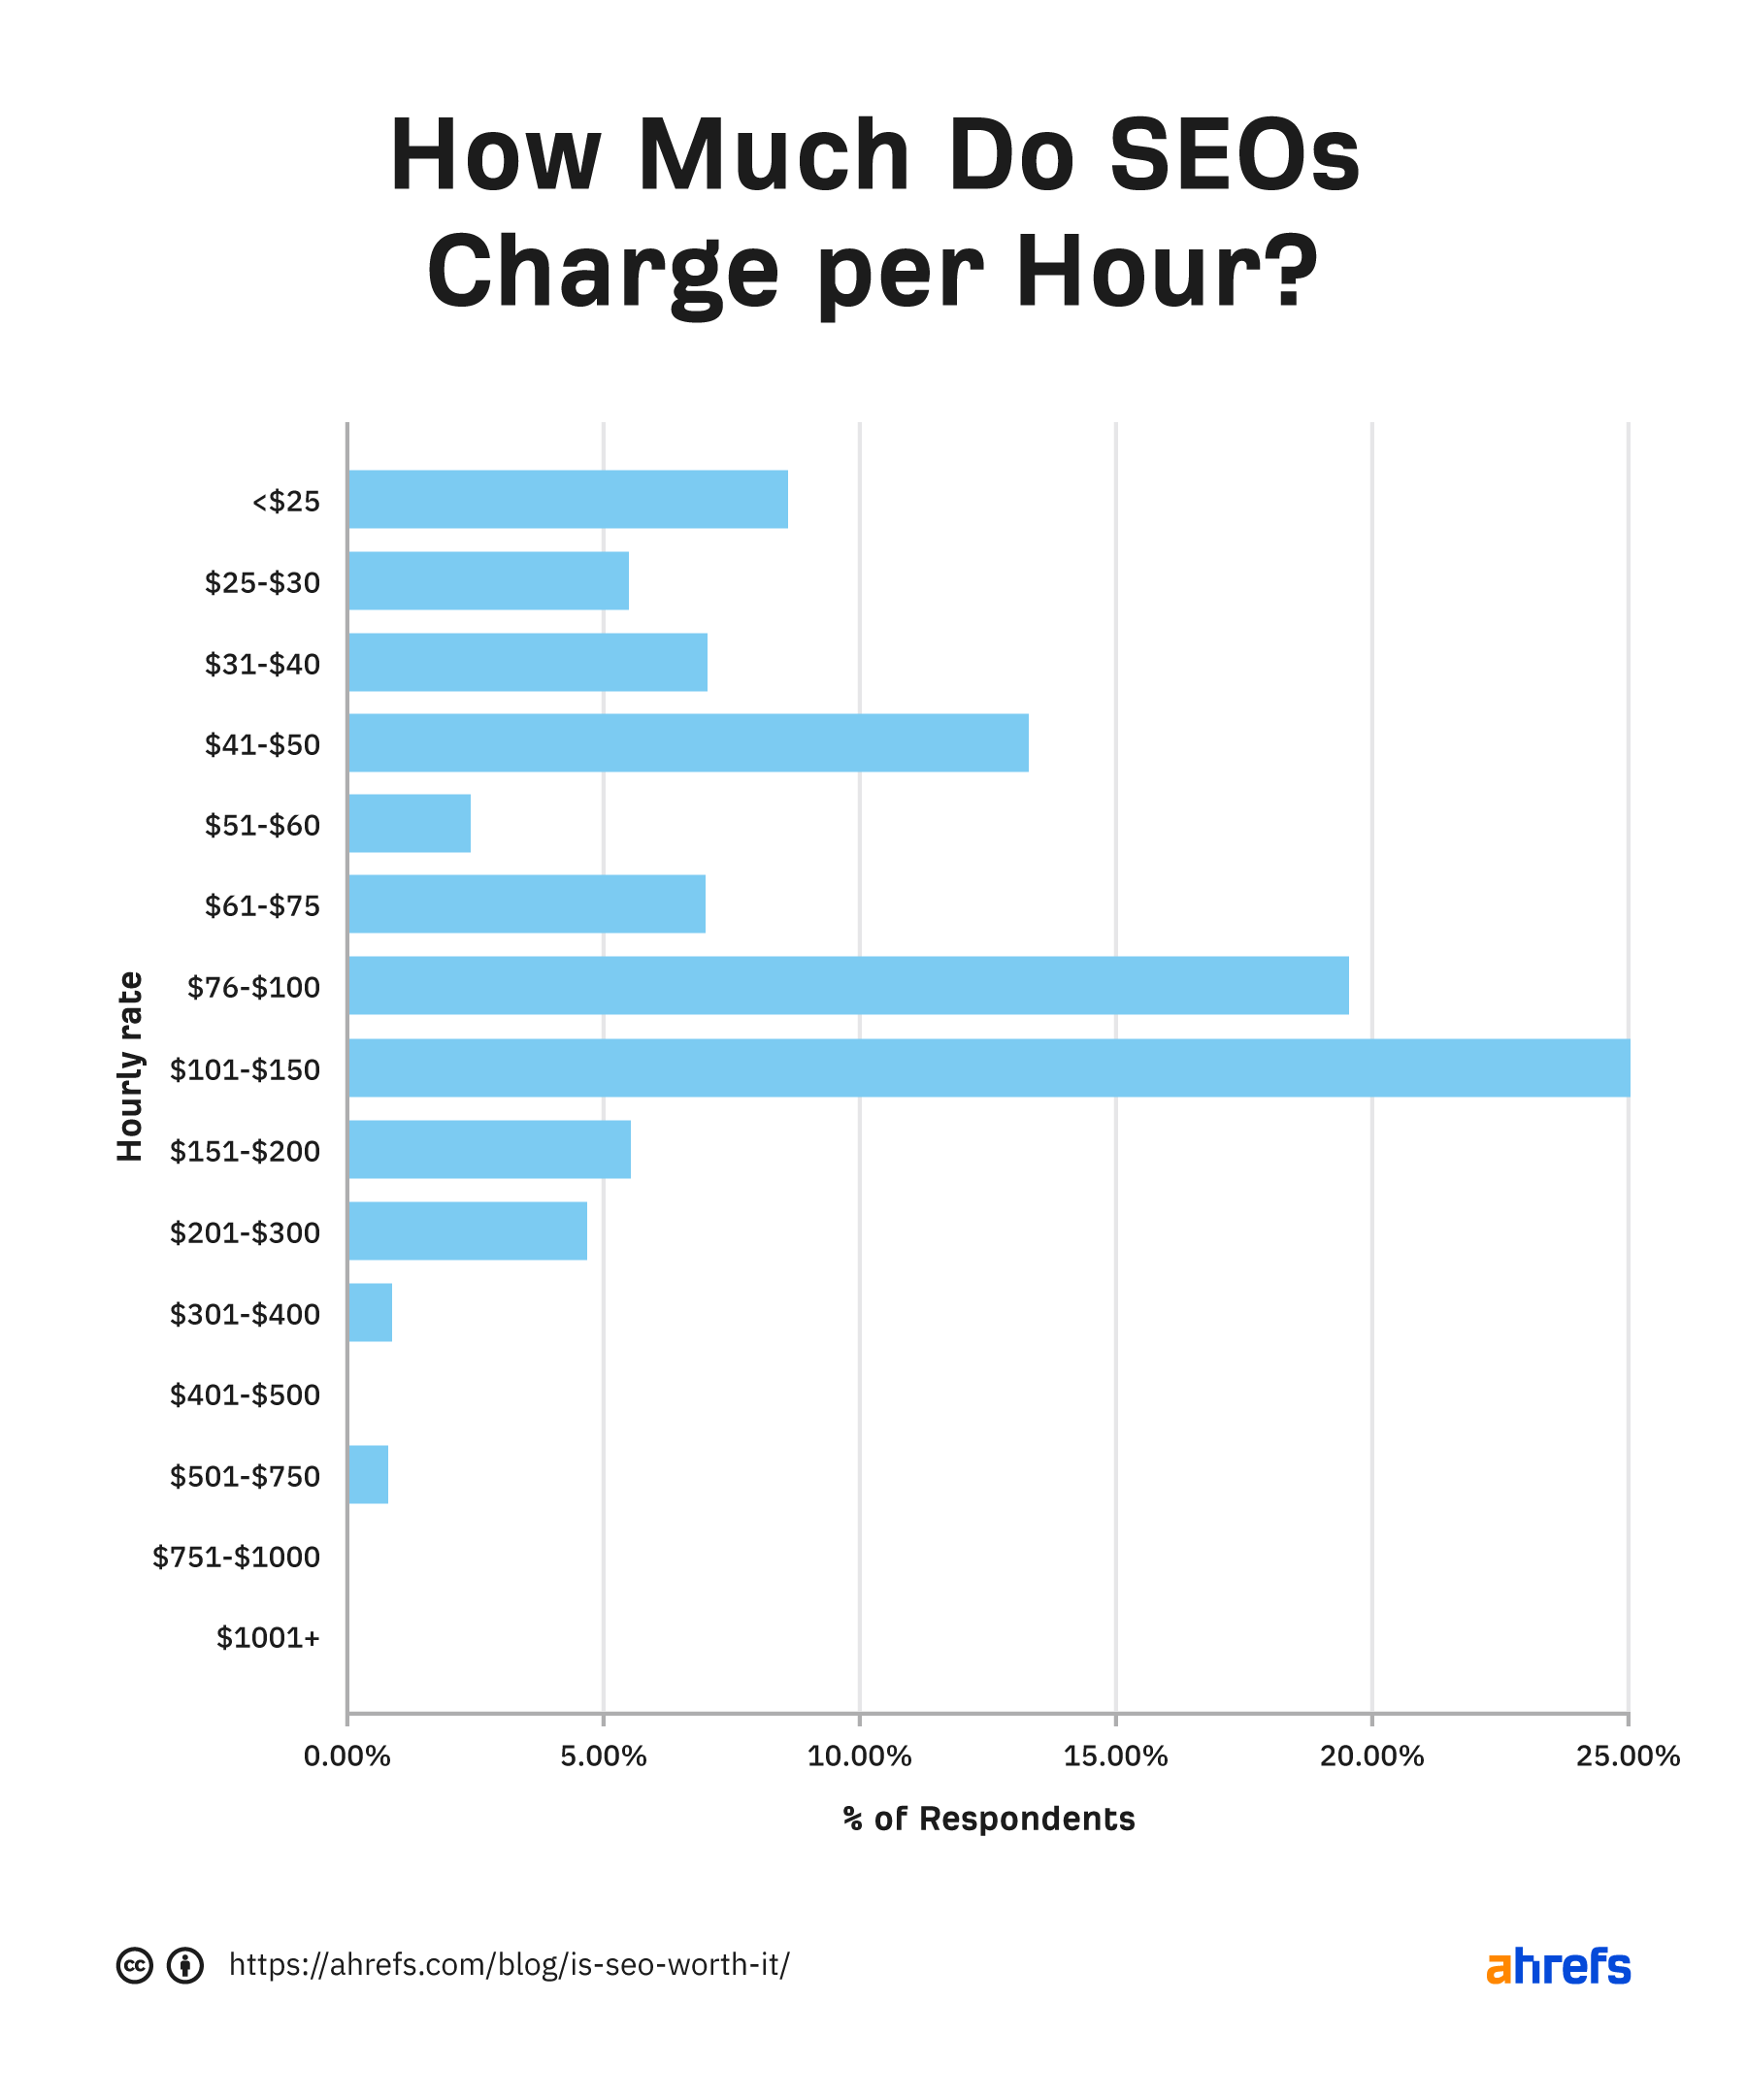 Gráfico de barras que muestra que la mayoría de los SEO están cobrando $ 76-100 y $ 101-150 por hora